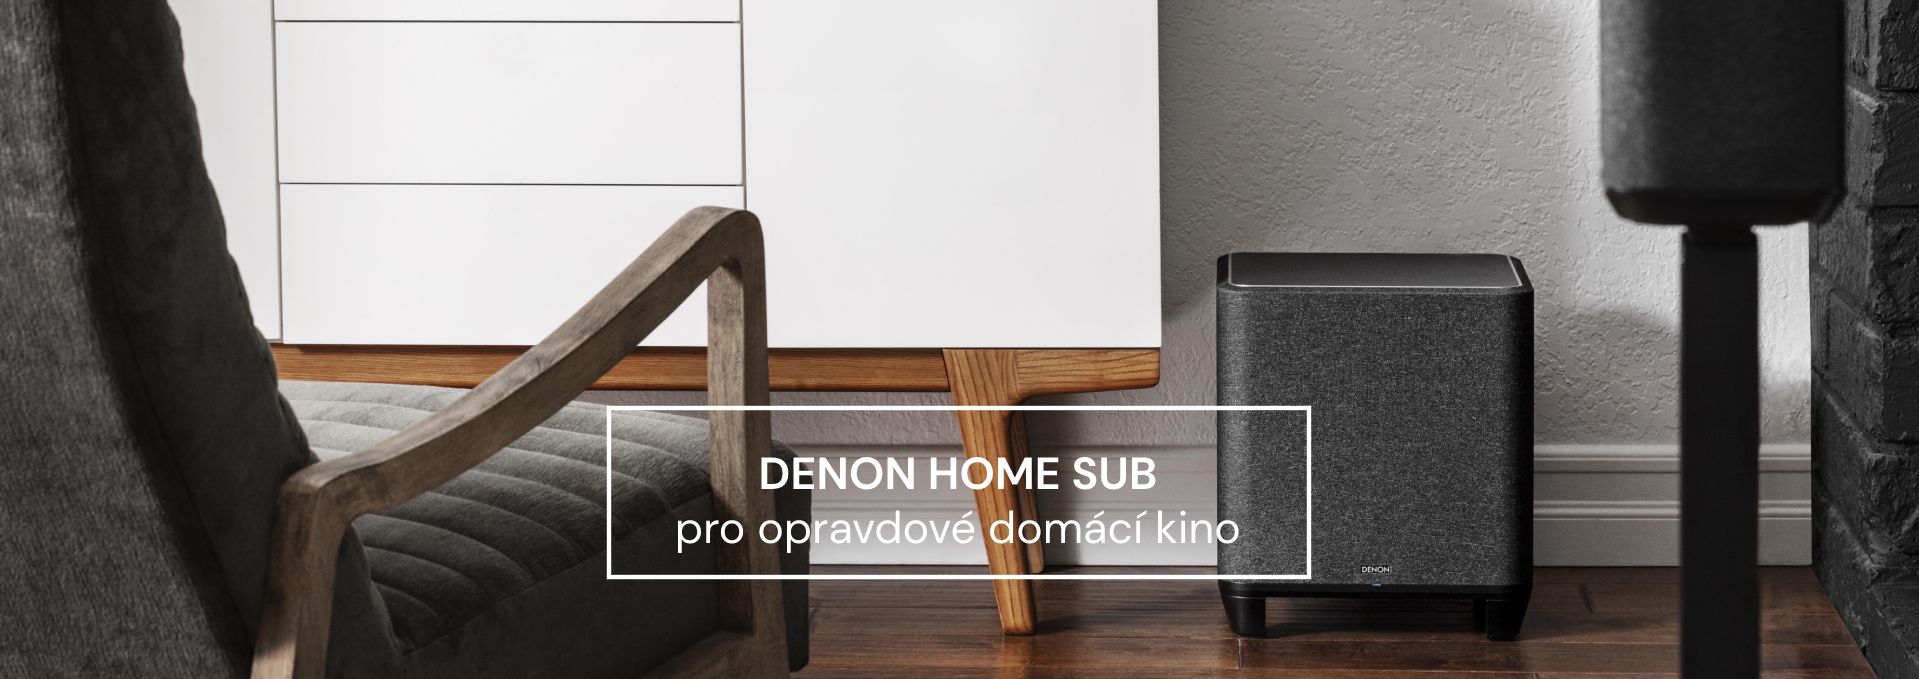 Denon Home Sub